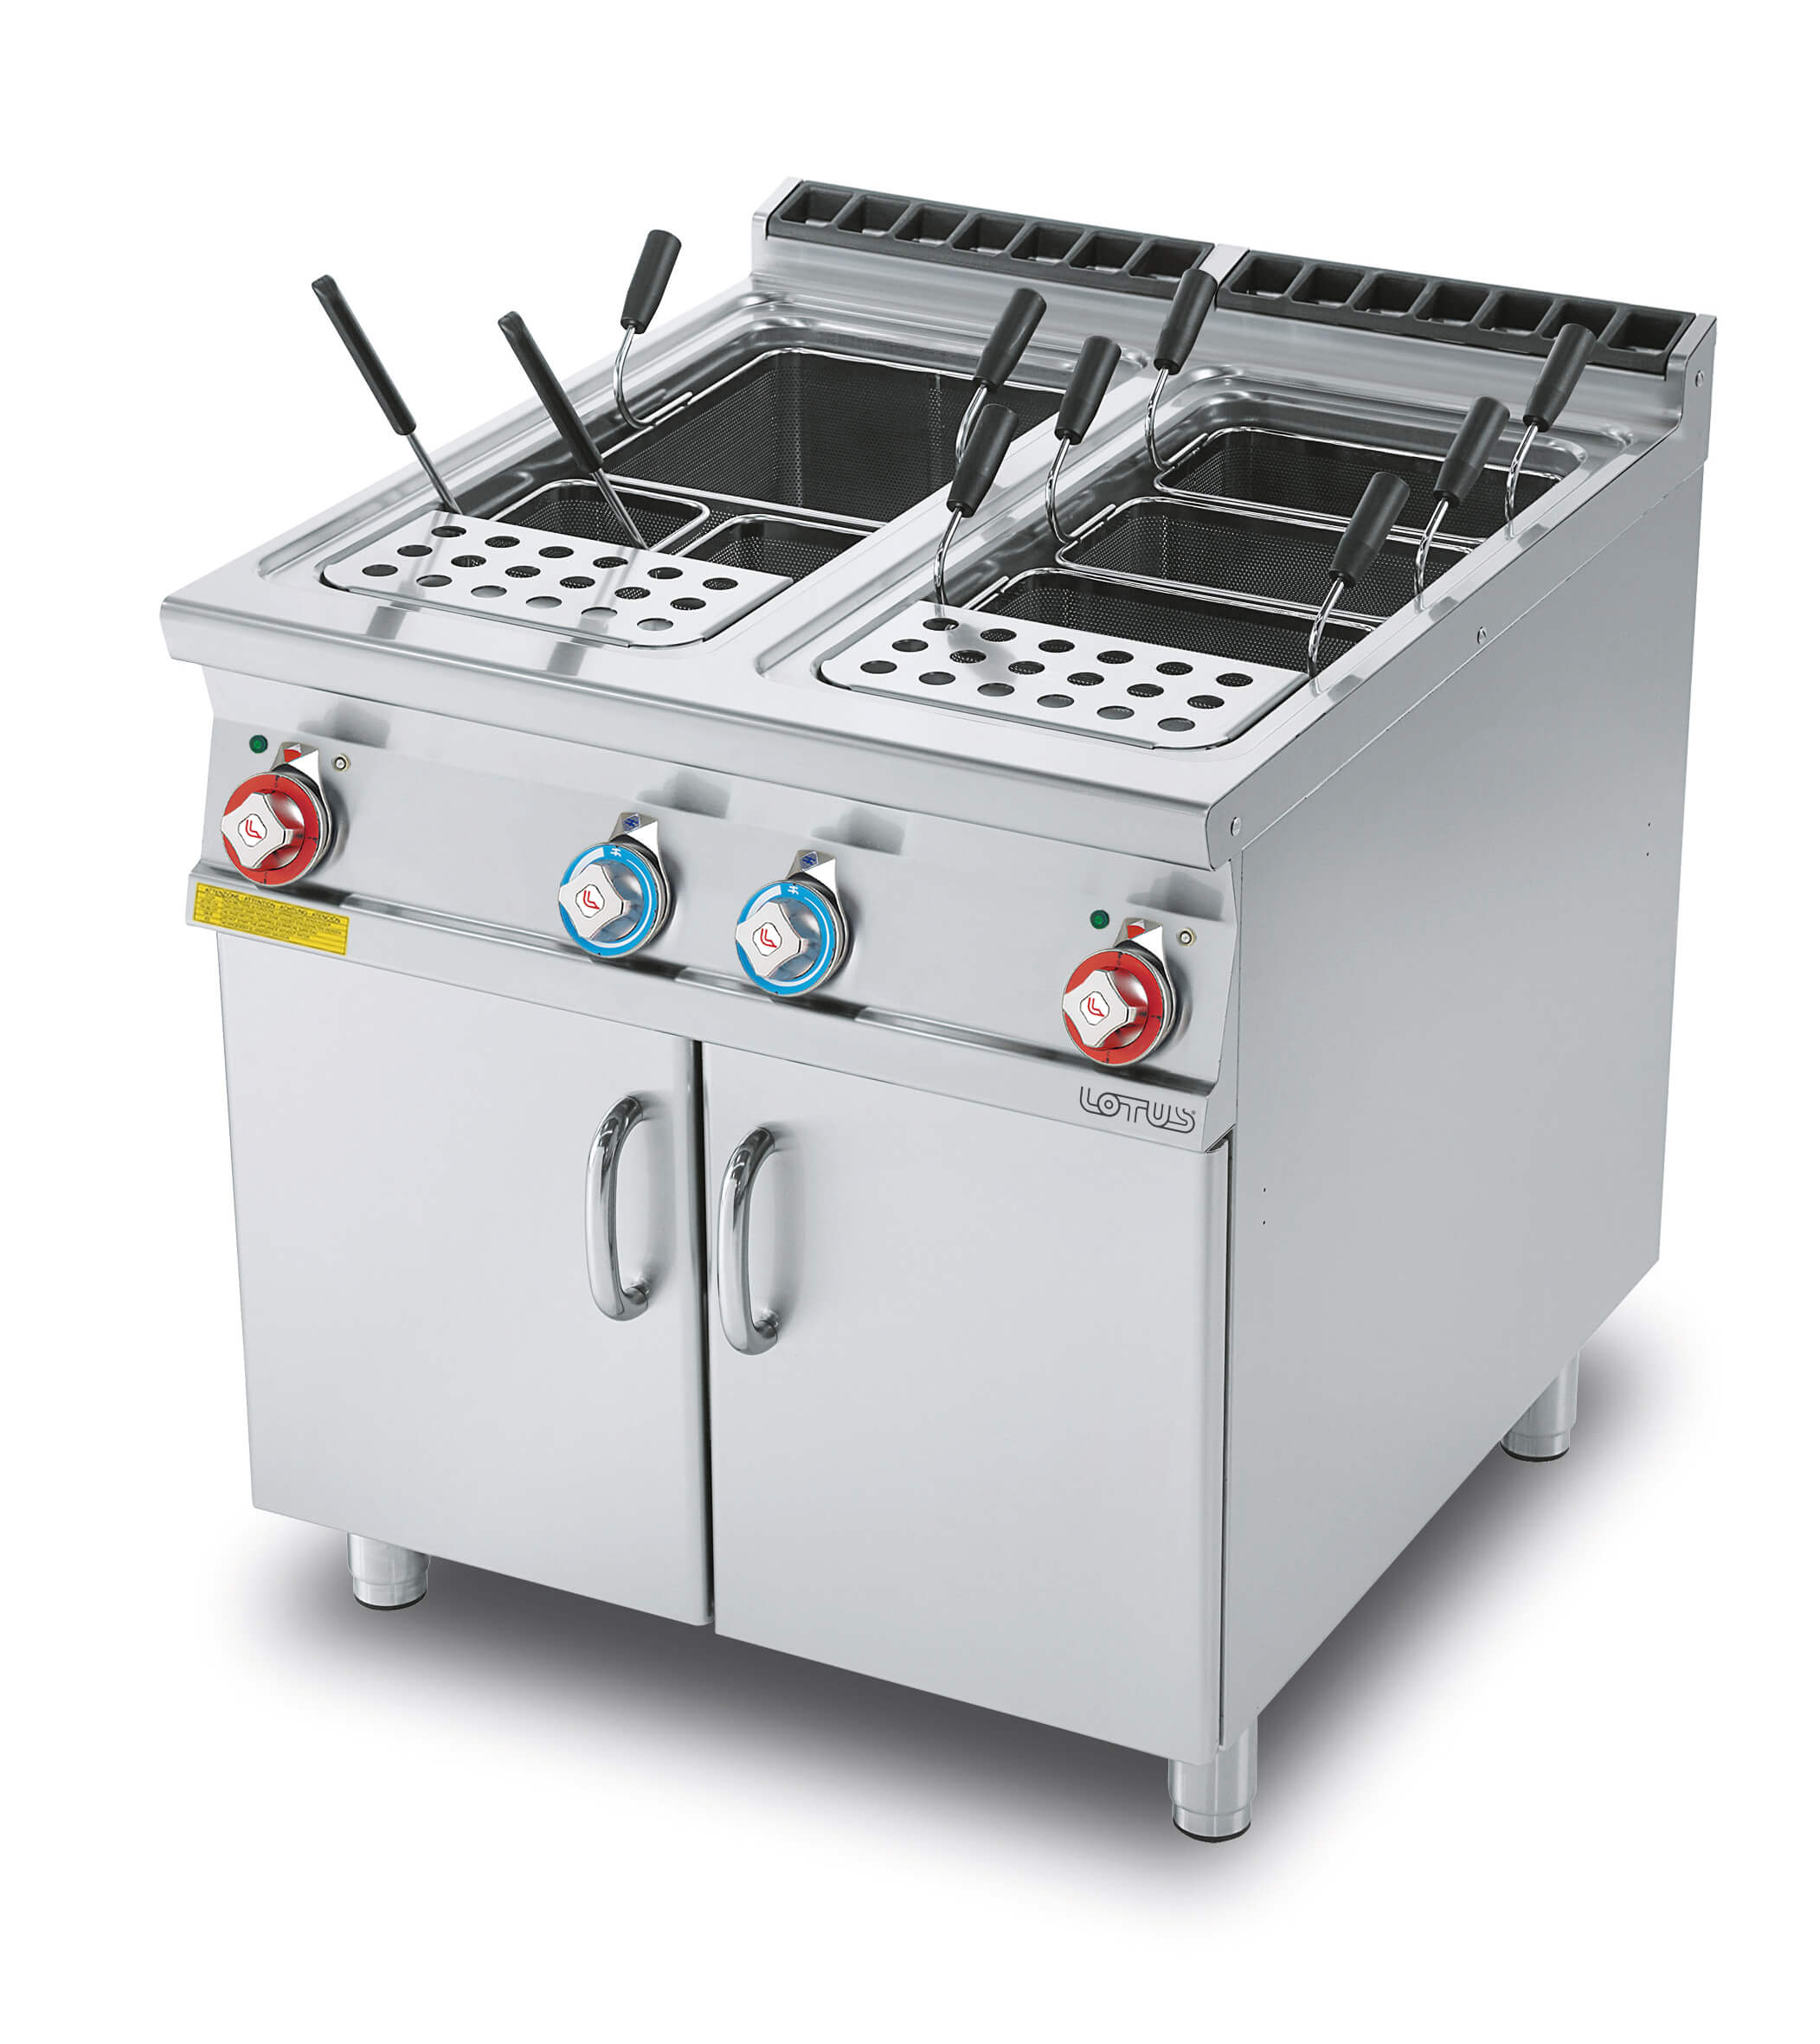 Cuocipasta elettrico - vasca doppia 40 + 40 Litri - Noleggio attrezzature  per cucine professionali - Inox Rent